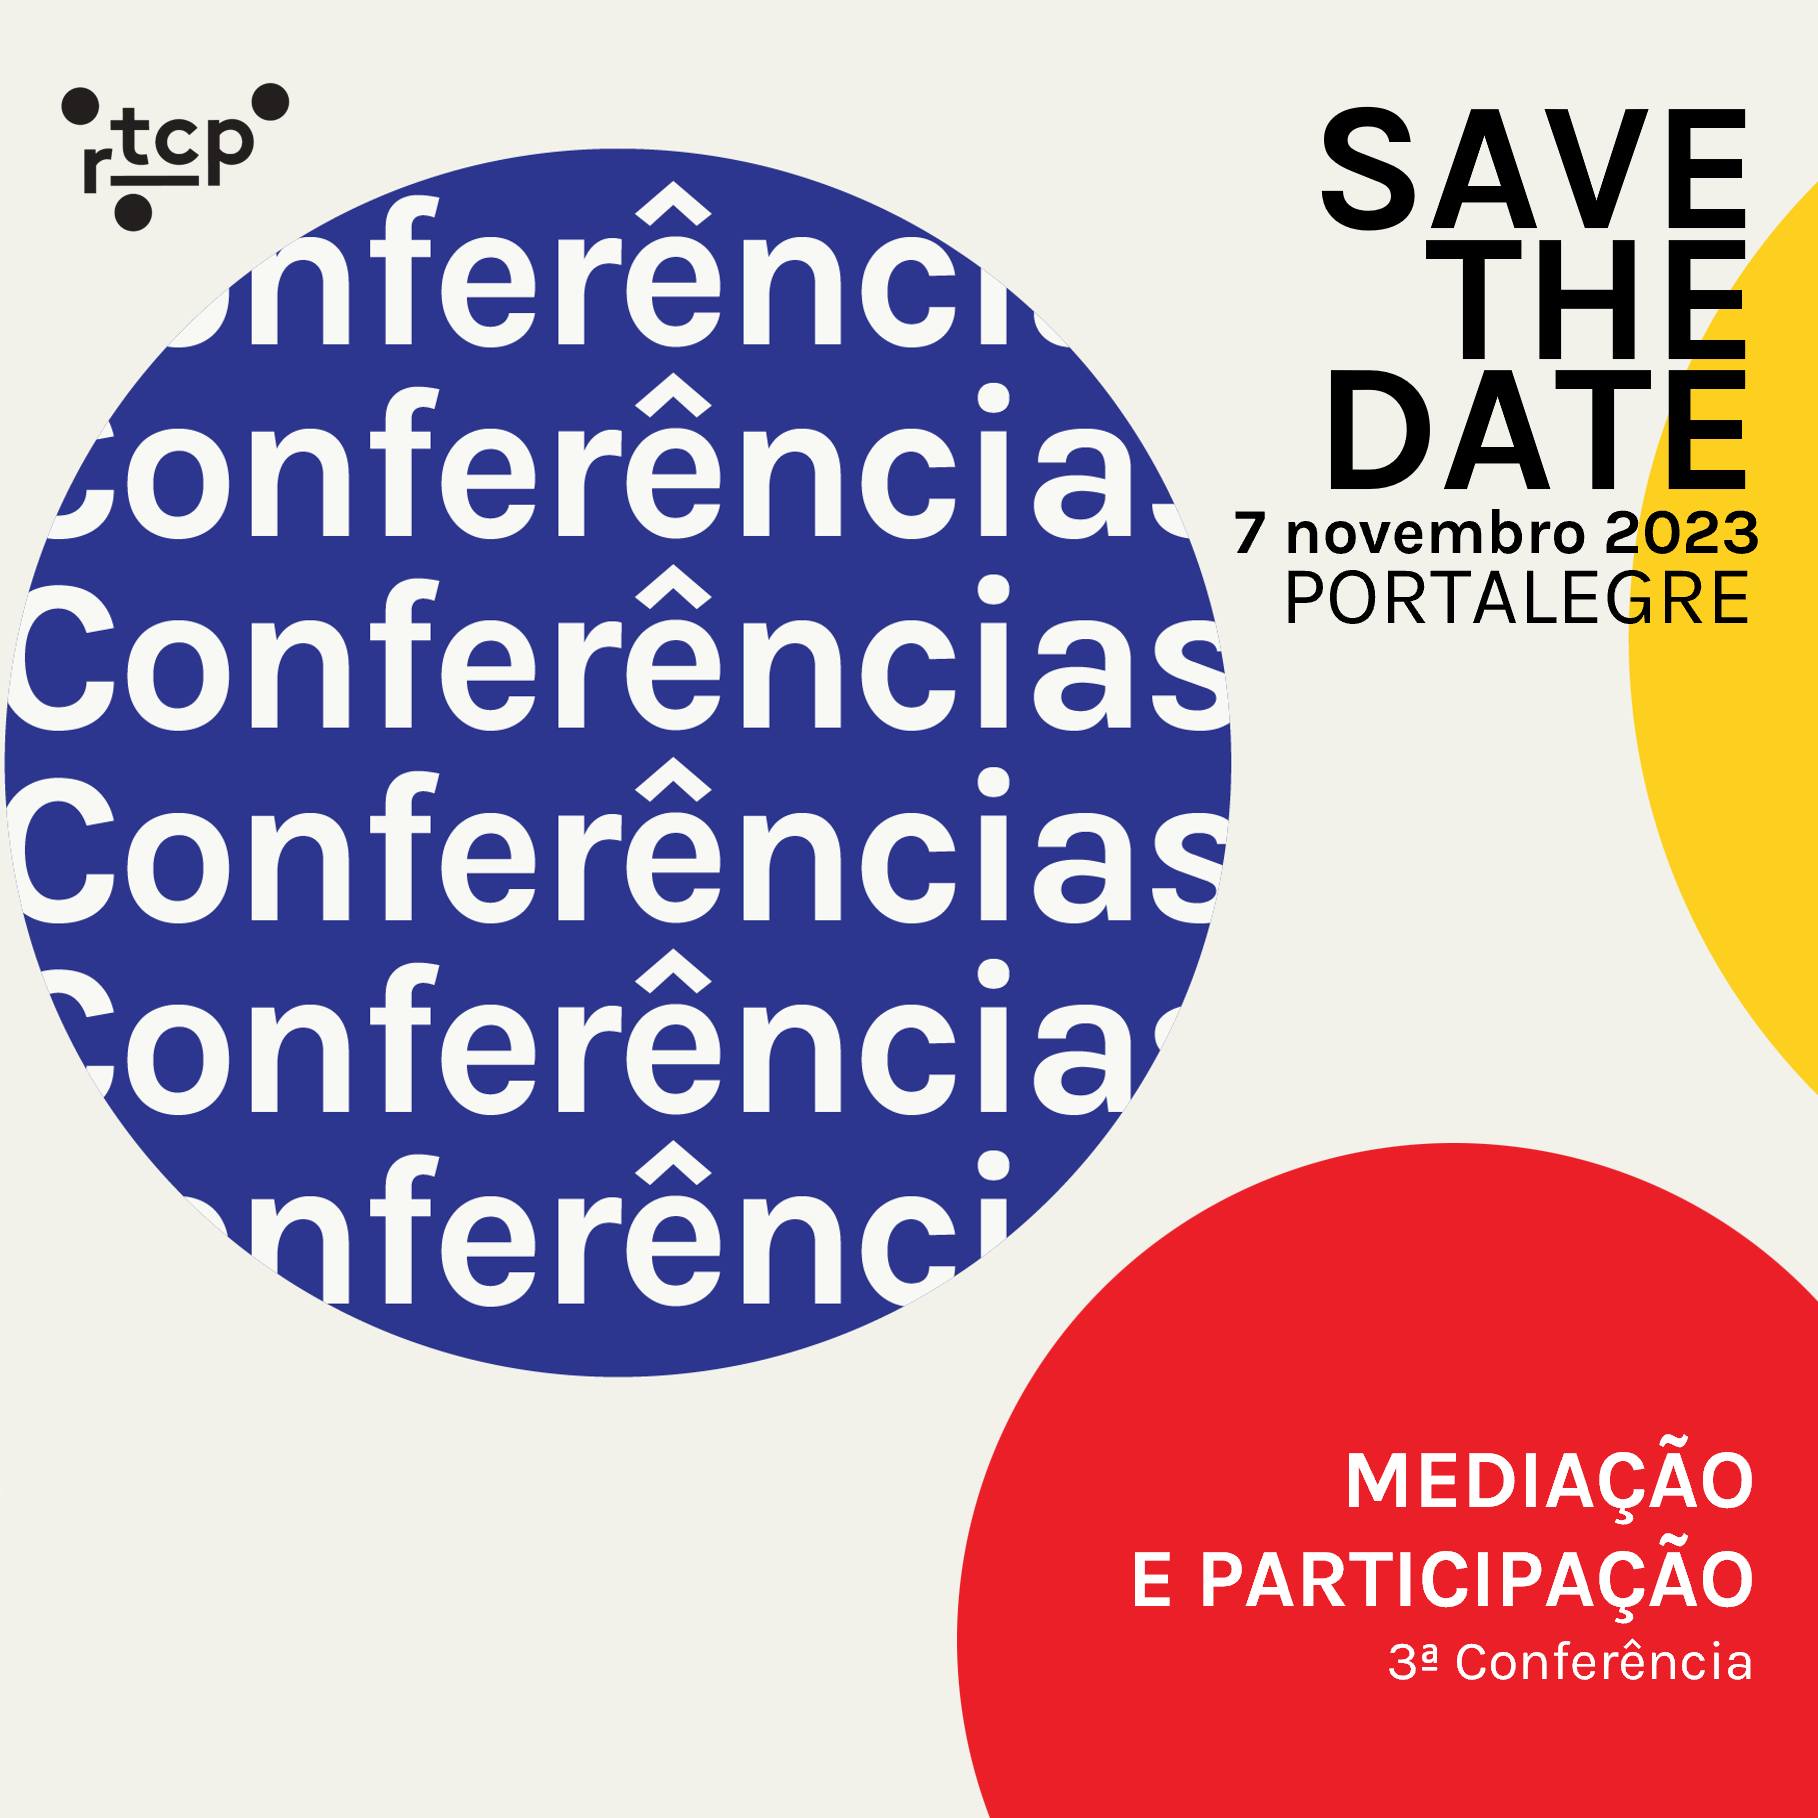 3ª Conferência RTCP - Mediação e Participação - Save the Date